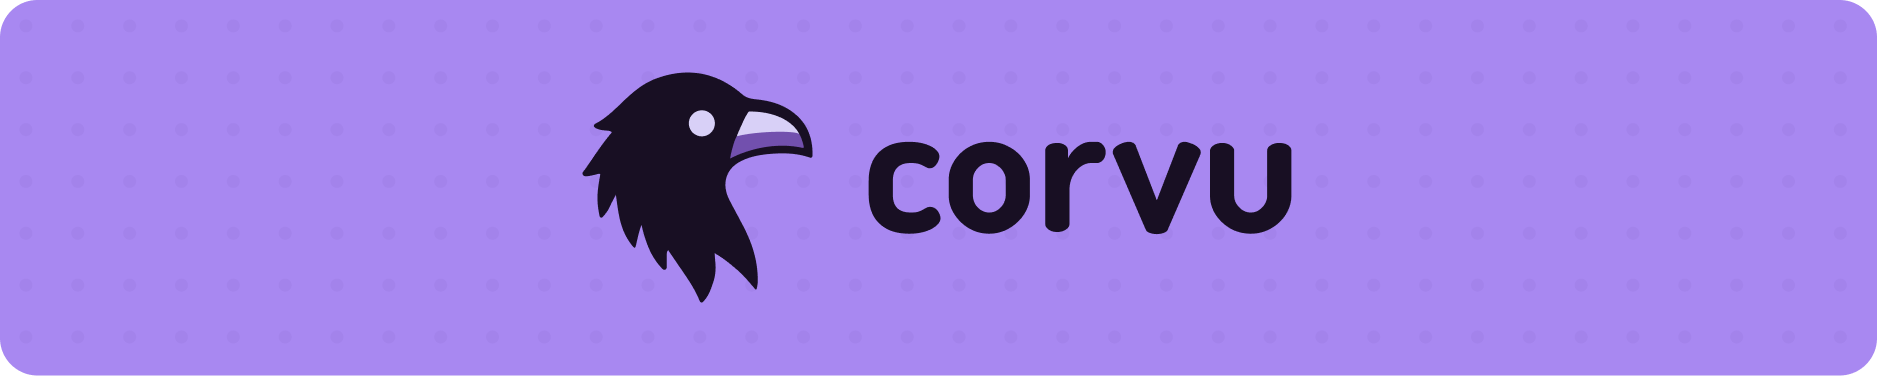 corvu banner